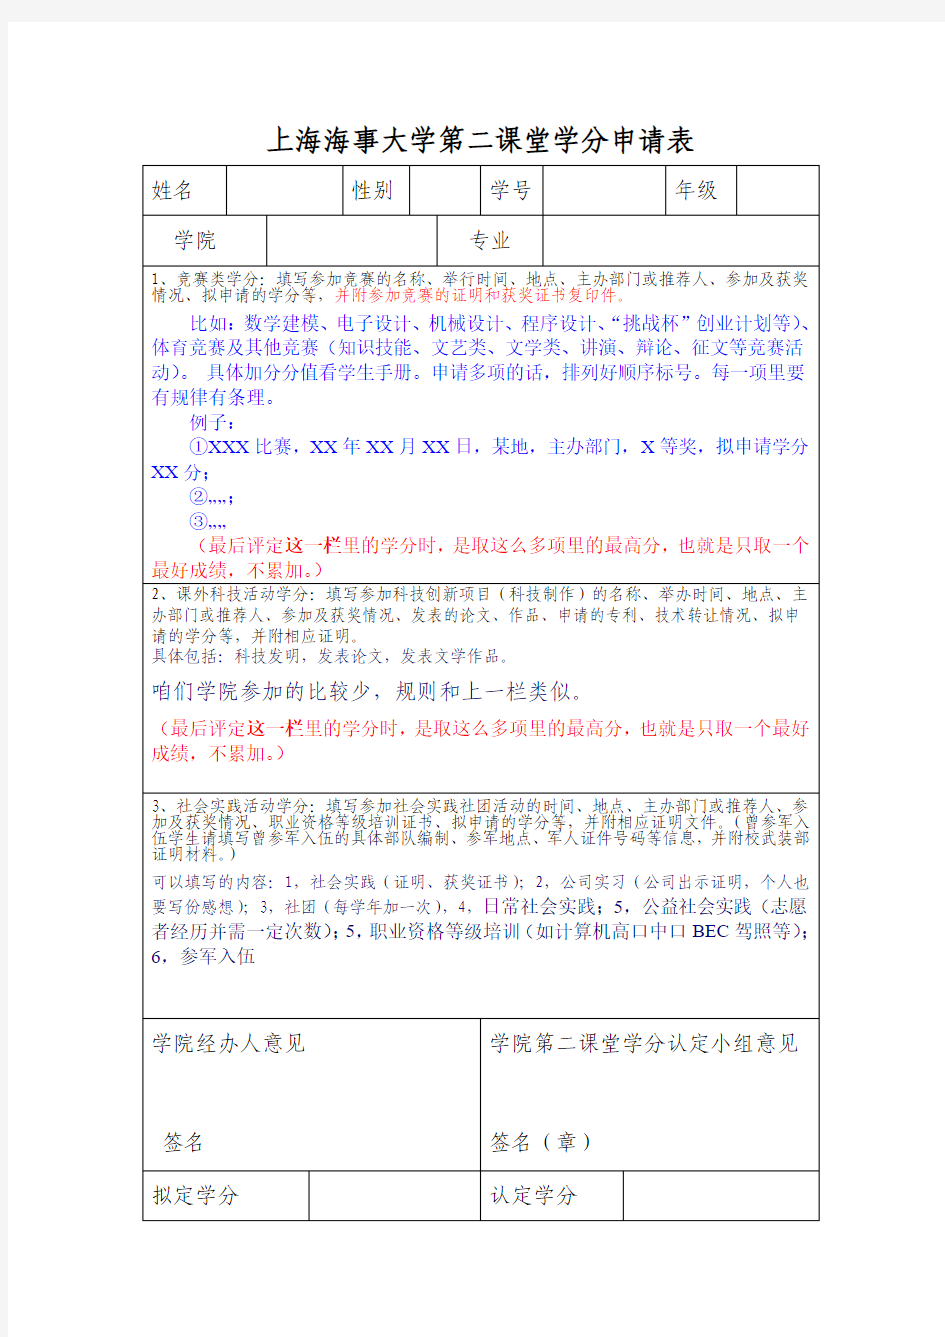 上海海事大学第二课堂学分申请表_简单讲解